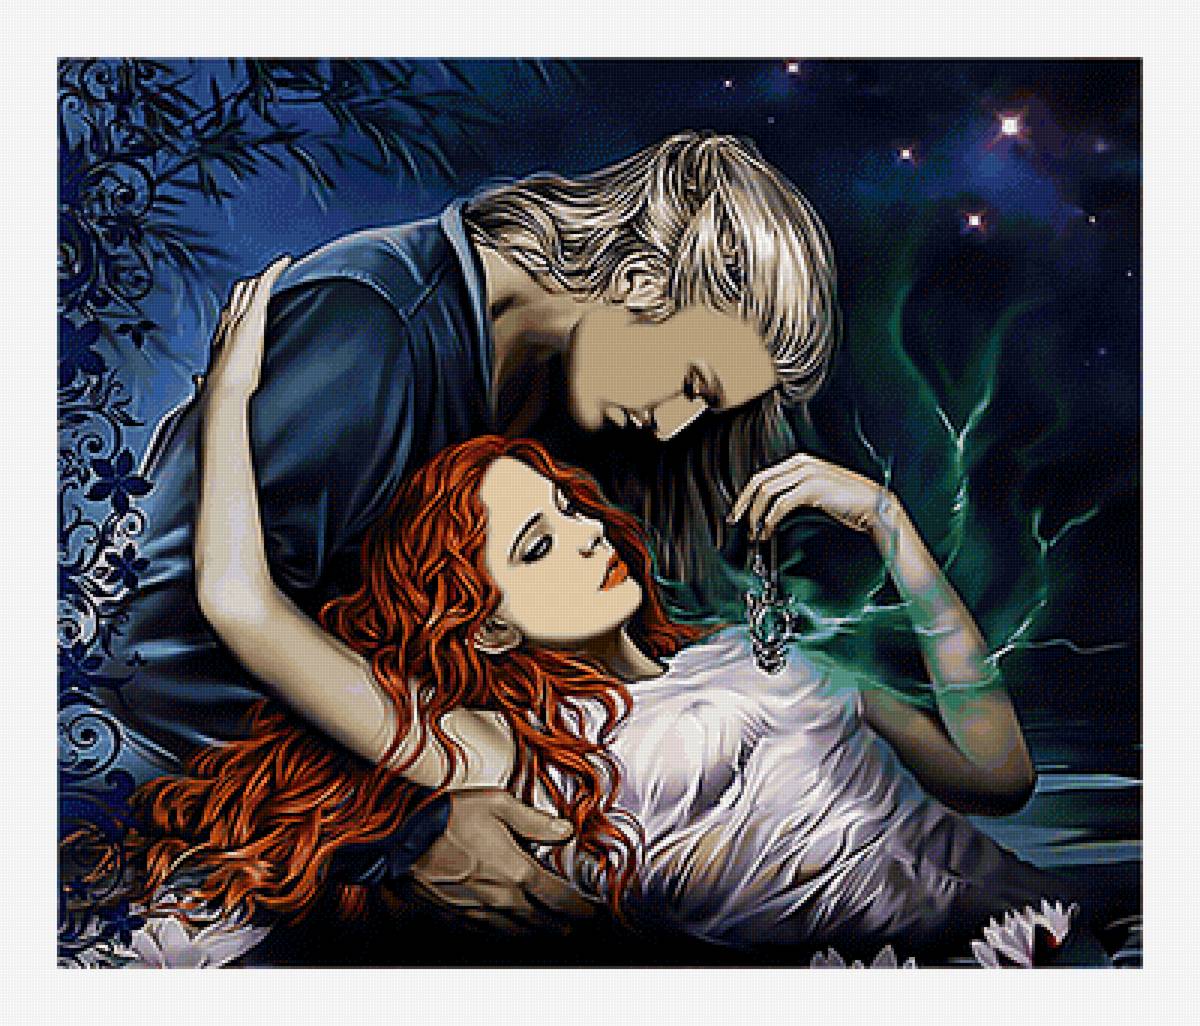 Будь моей ведьмой читать. Фэнтези любовь. Рыжий блондин. Мужчина и женщина фэнтези. Фэнтези романтика.